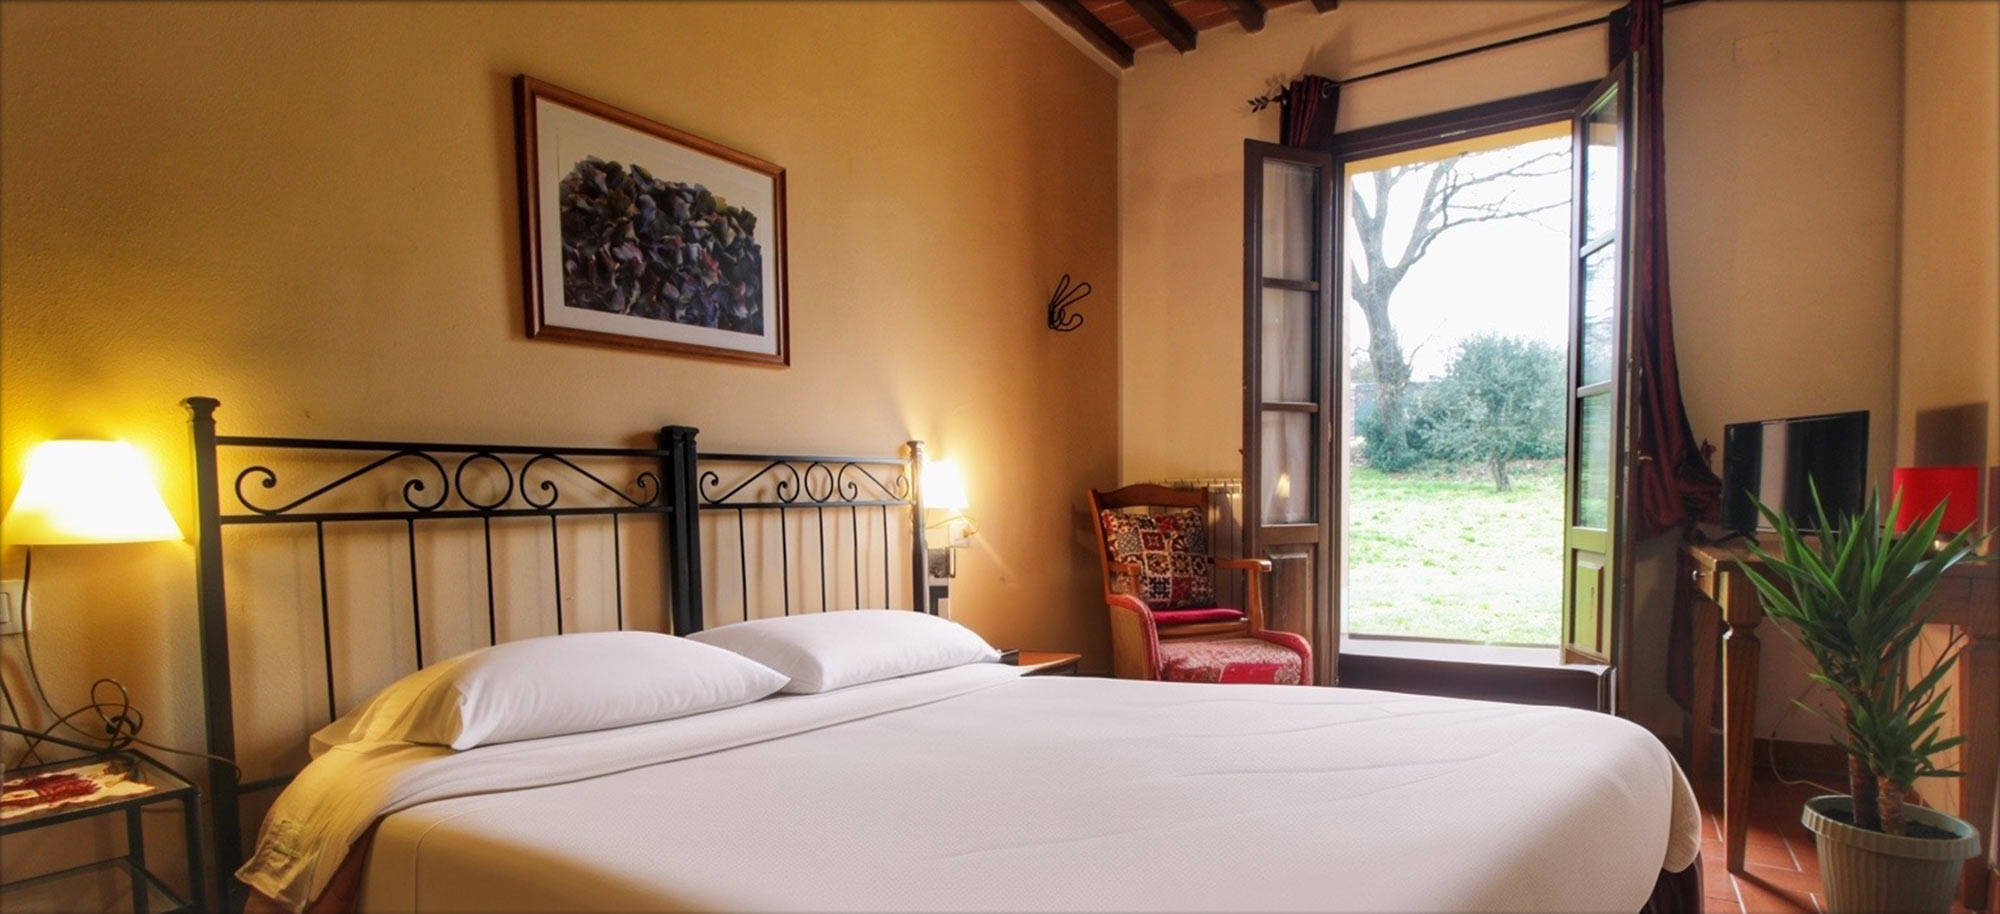 Corte Tommasi - Residence turistico - 203 - Appartamento per vacanze con piscina in Toscana